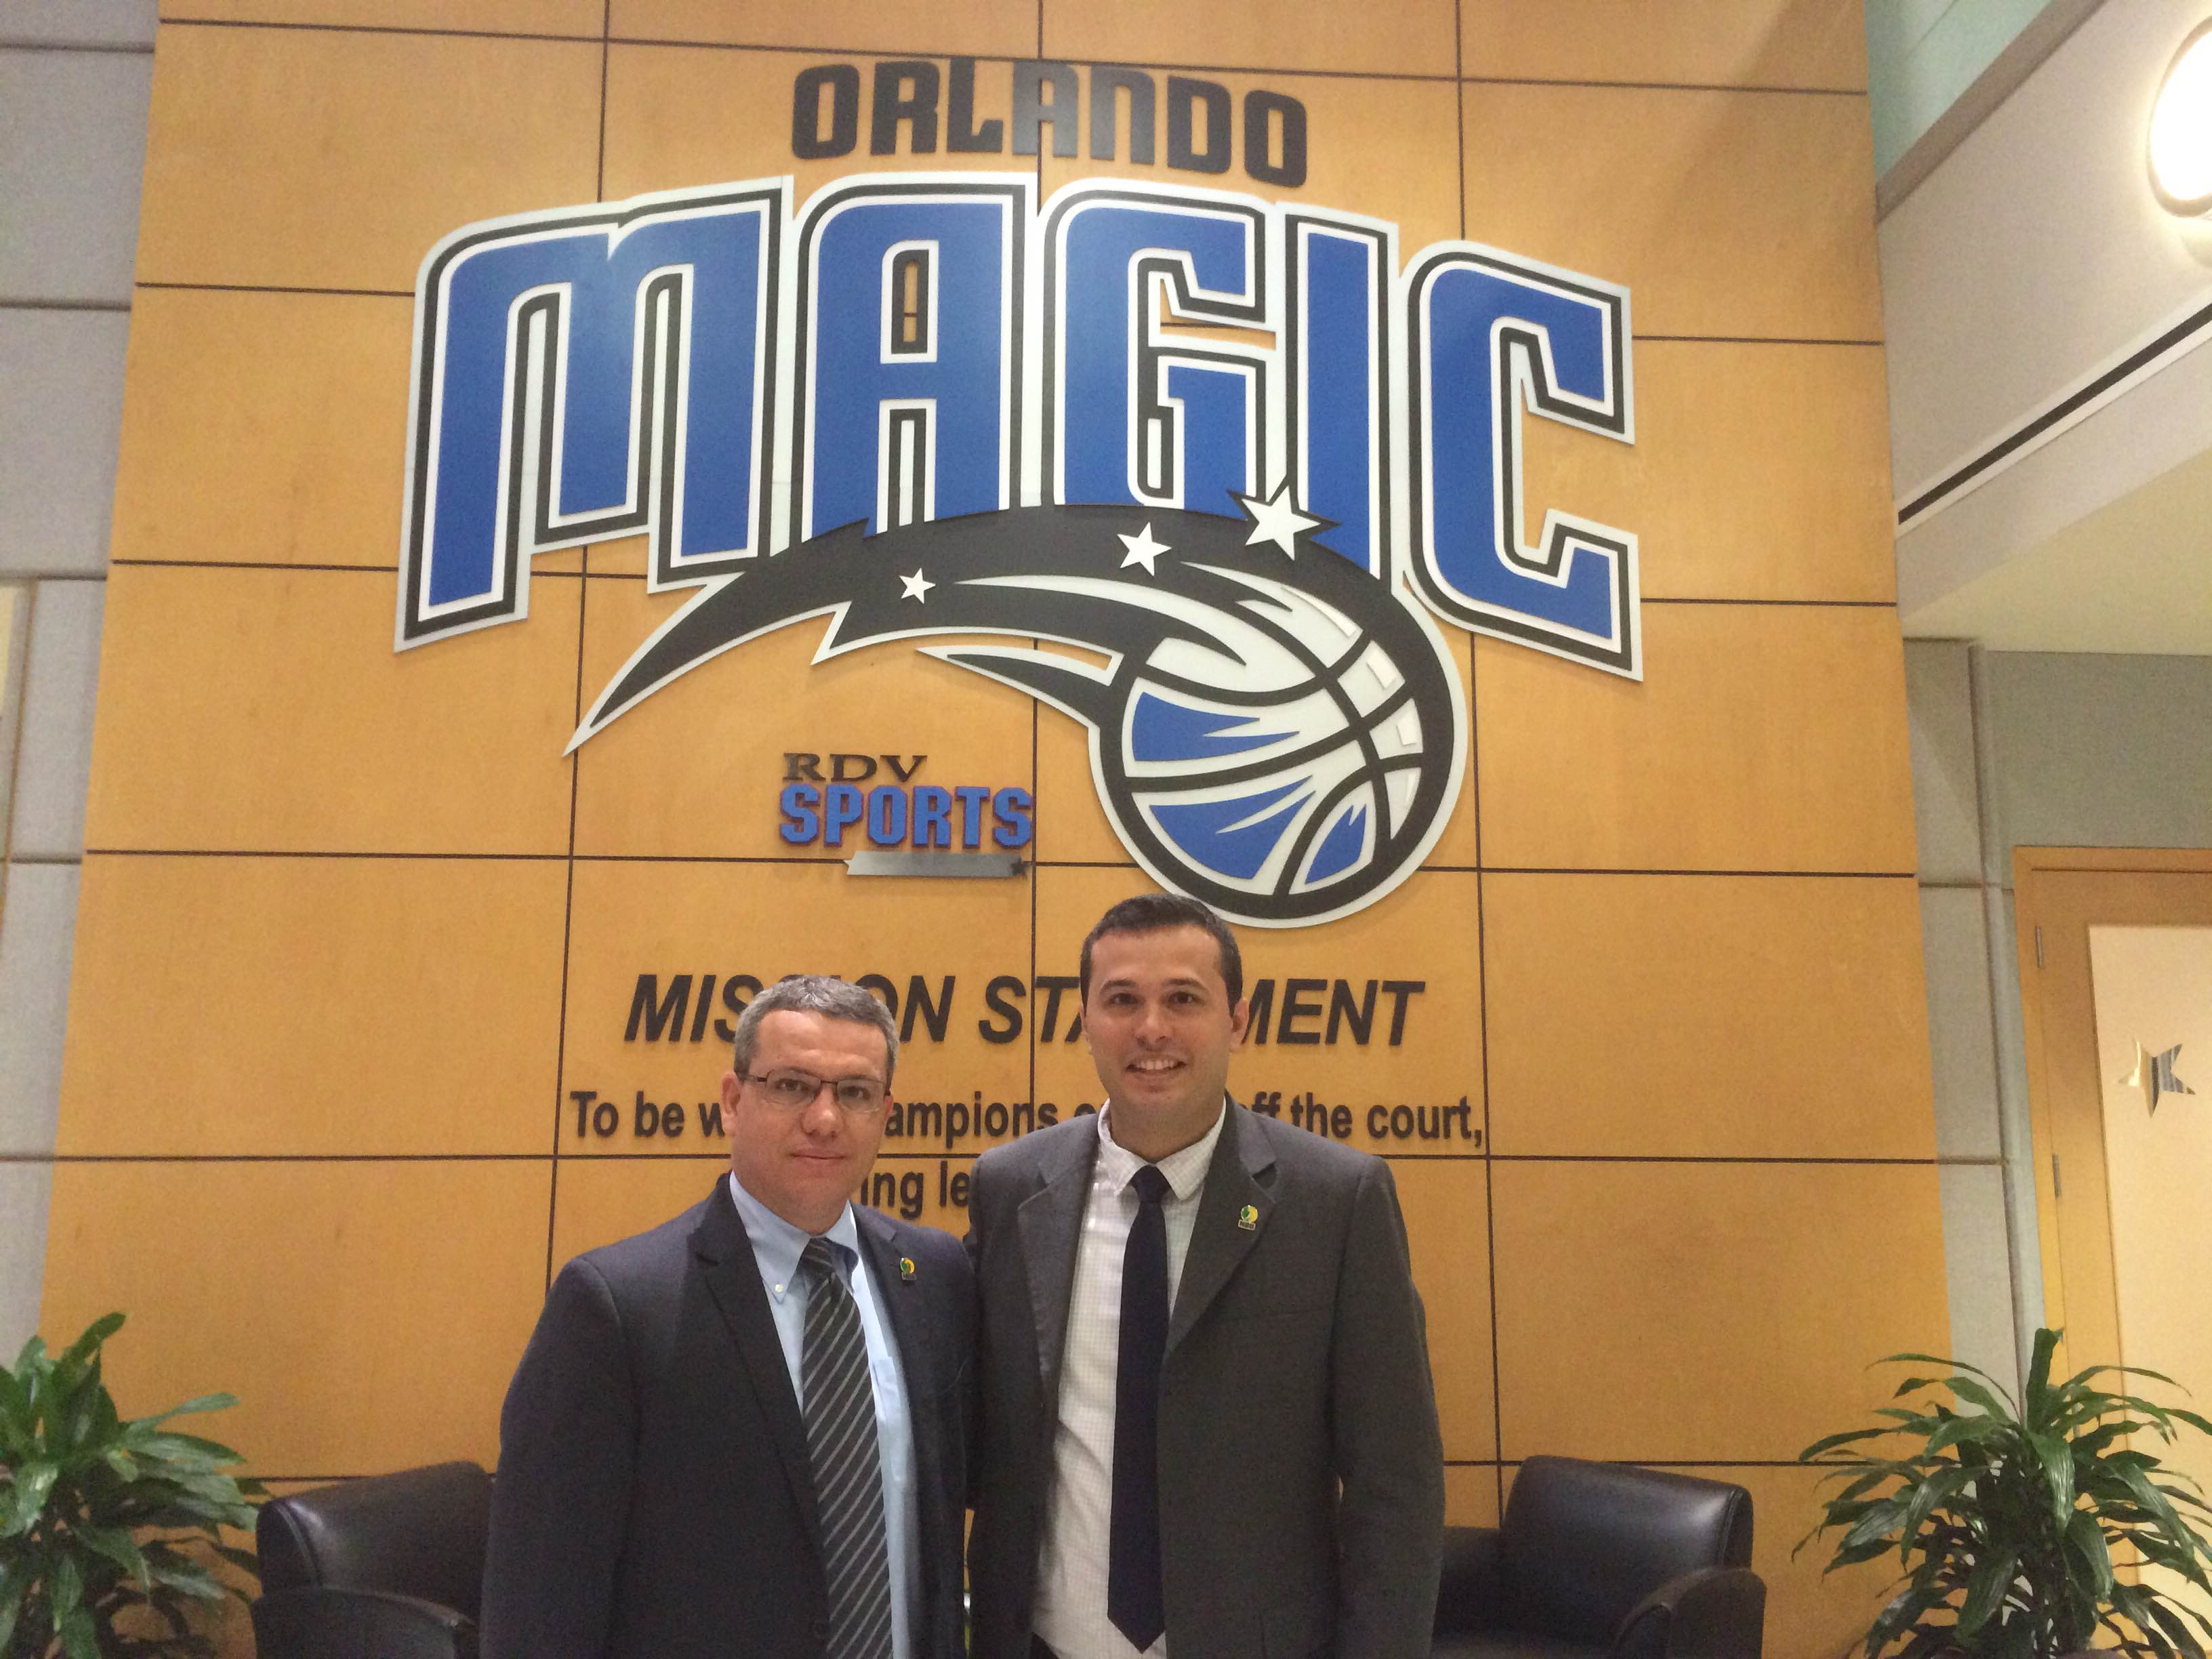 Álvaro Cotta e Guilherme Buso representaram a LNB nas reuniões com o Orlando Magic (Divulgação)